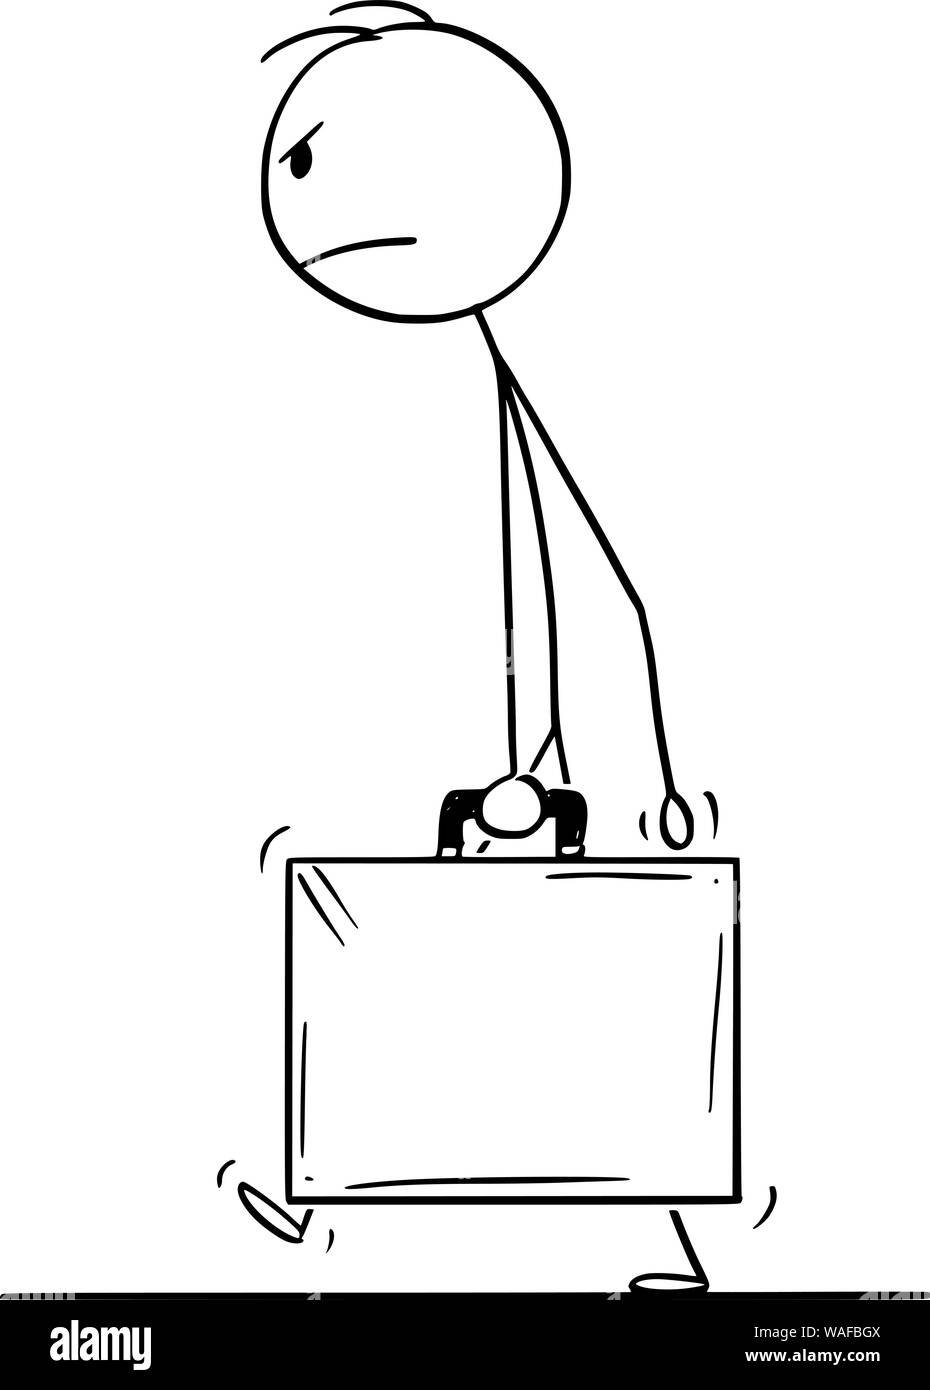 Vector cartoon stick figure dessin illustration conceptuelle de angry man walking with suitcase, porte-documents ou un cas. Illustration de Vecteur